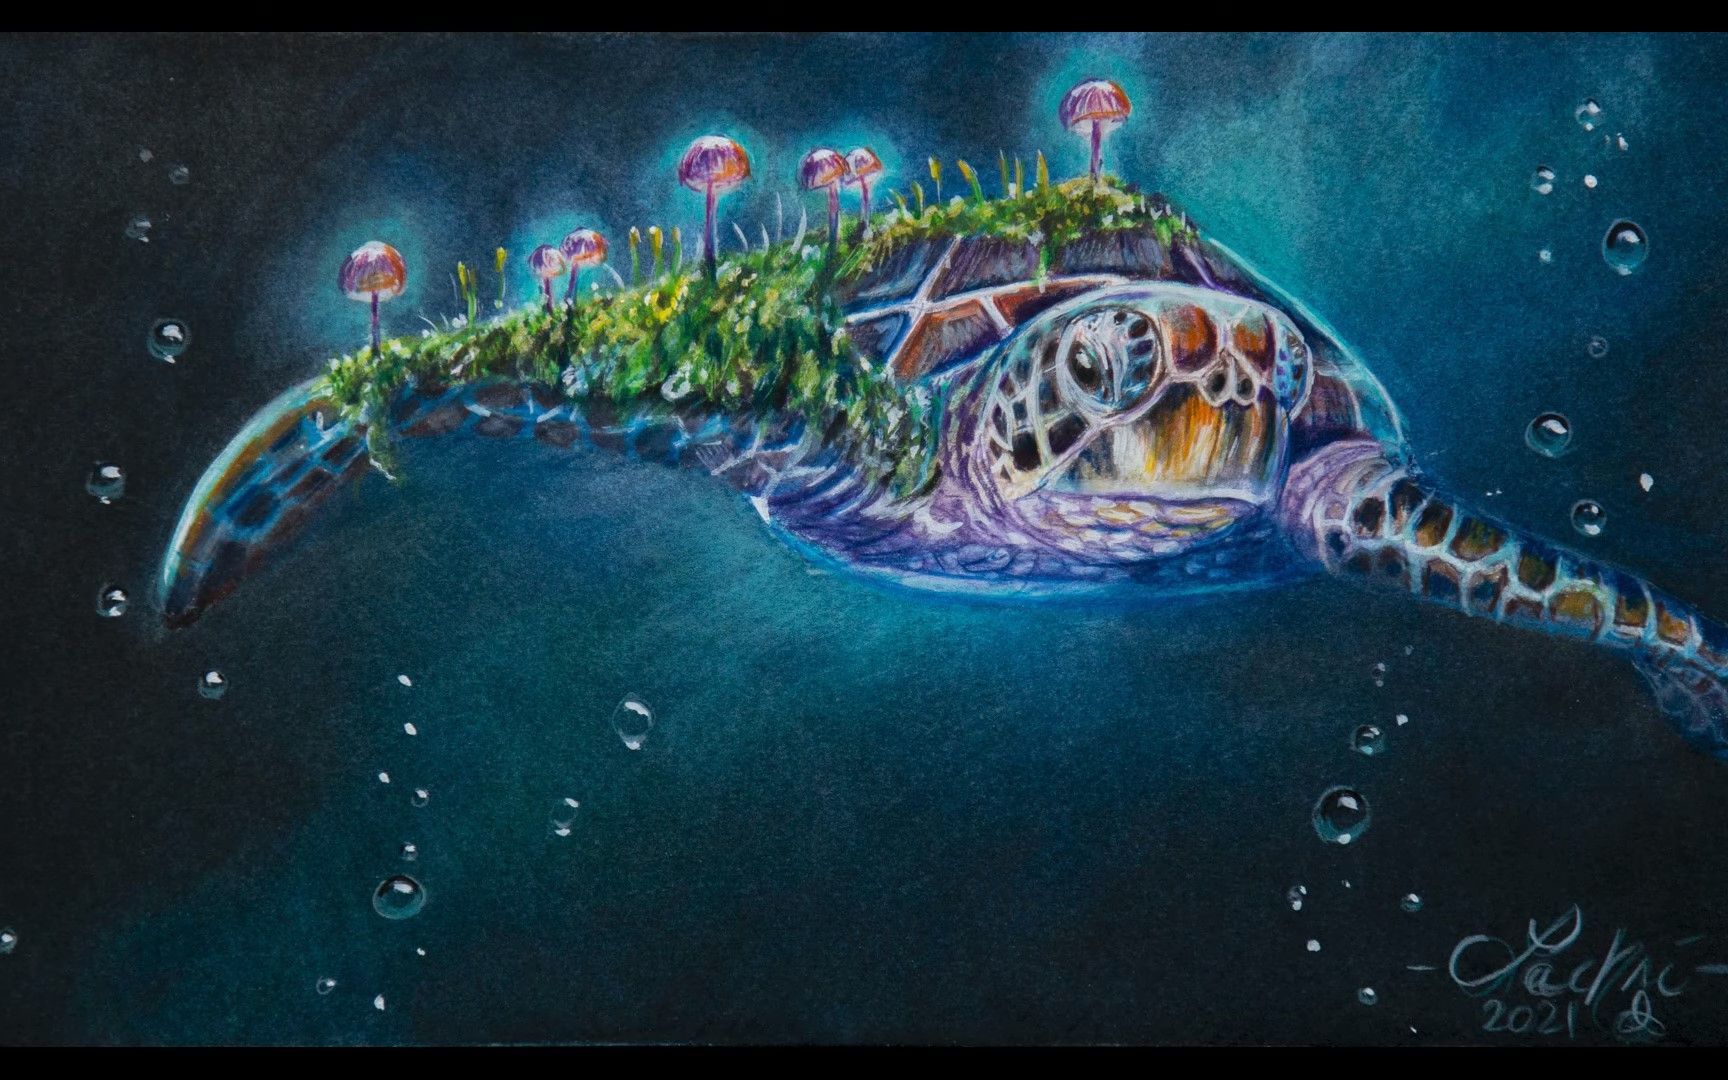 彩铅梦幻的彩铅绘画彩铅技法绘画过程海洋世界海龟